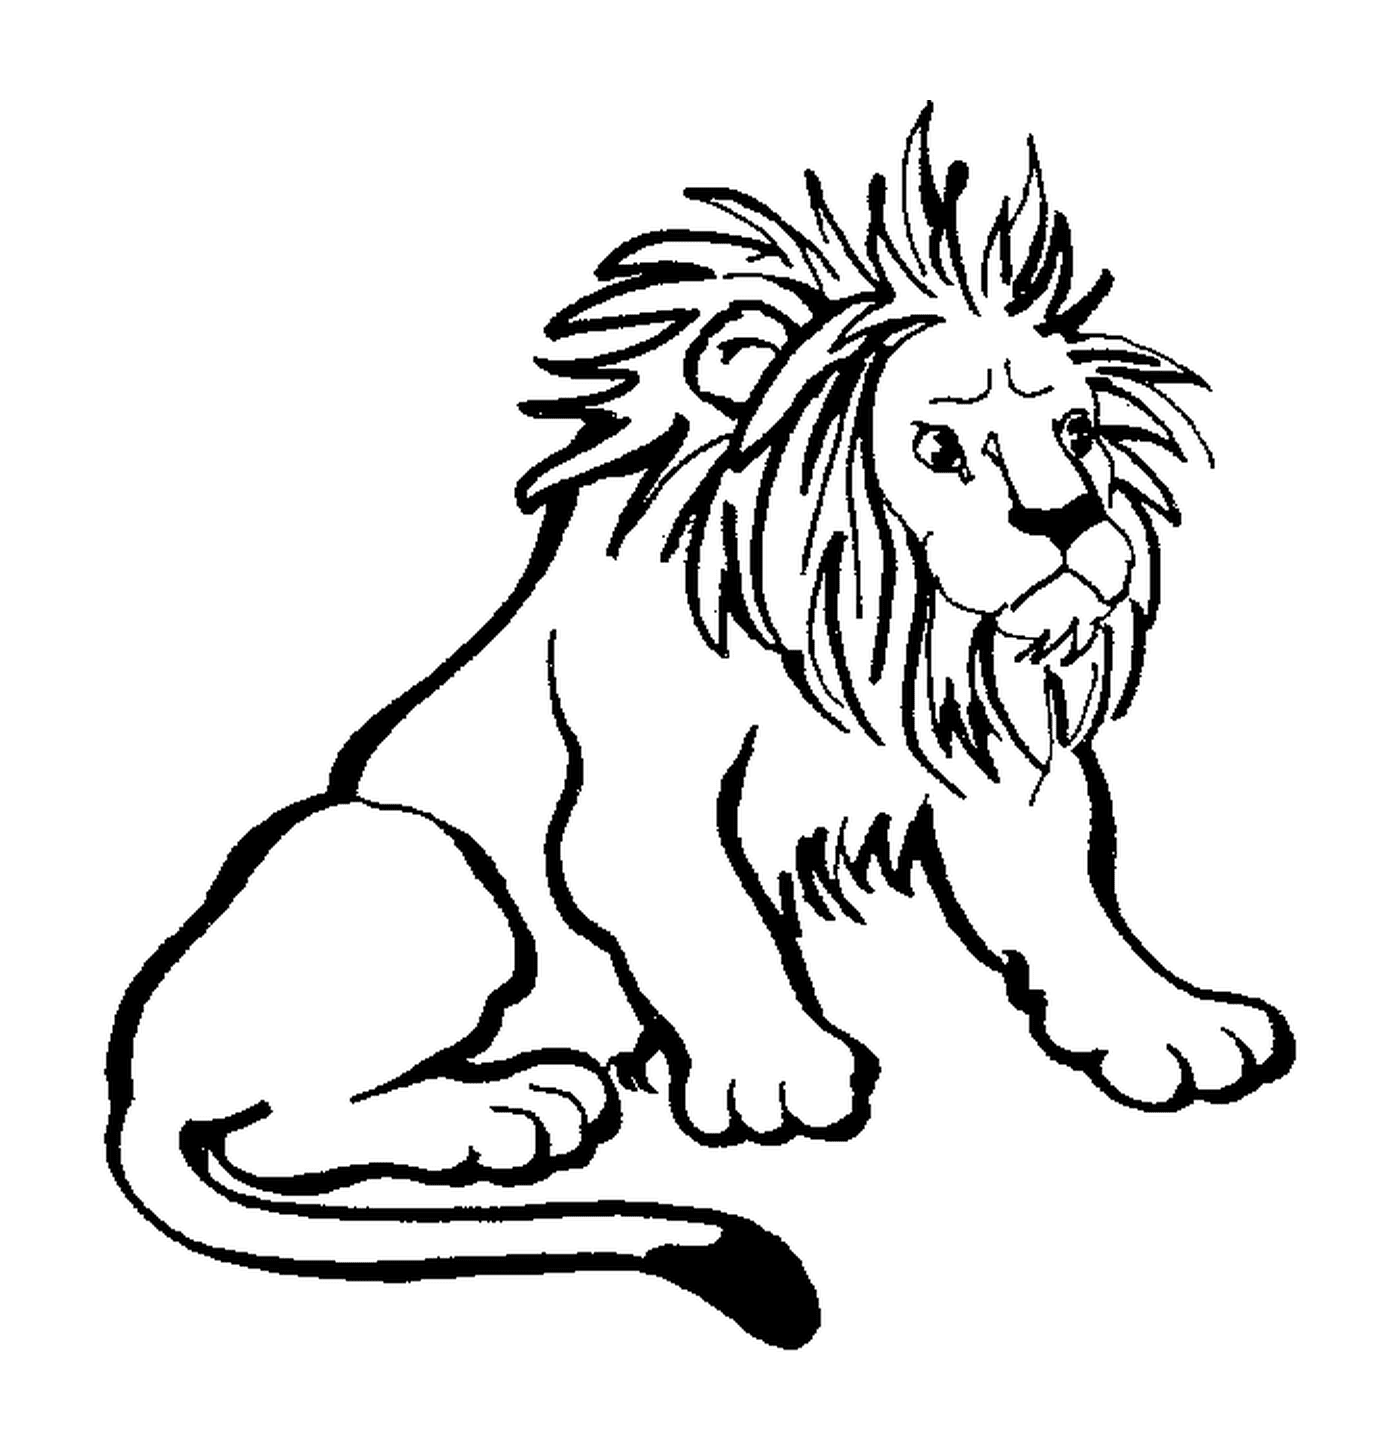  Rei da selva, poderoso leão 